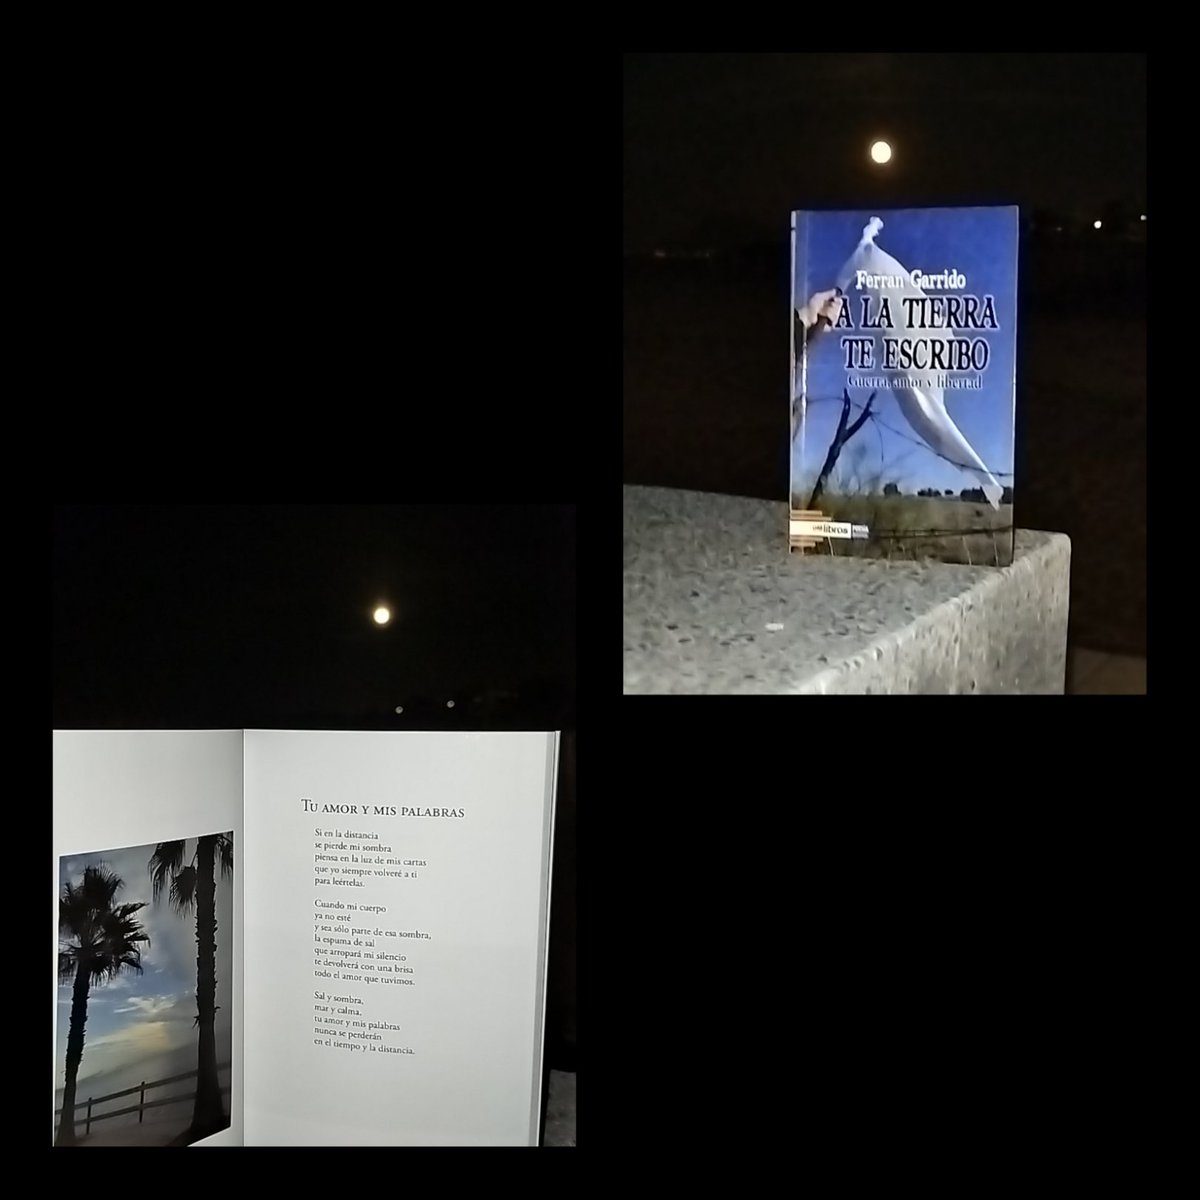 La luna...
Desde su libertad
nos ofrece
grandes titulares
cada día ♥️

Dedico el twuit a
@FerranGarrido 
Por su gran poemario
#AlaTierraTeEscribo

Recordar que está firmando su libro 📕
en la feria de Madrid
No os lo perdáis 👇